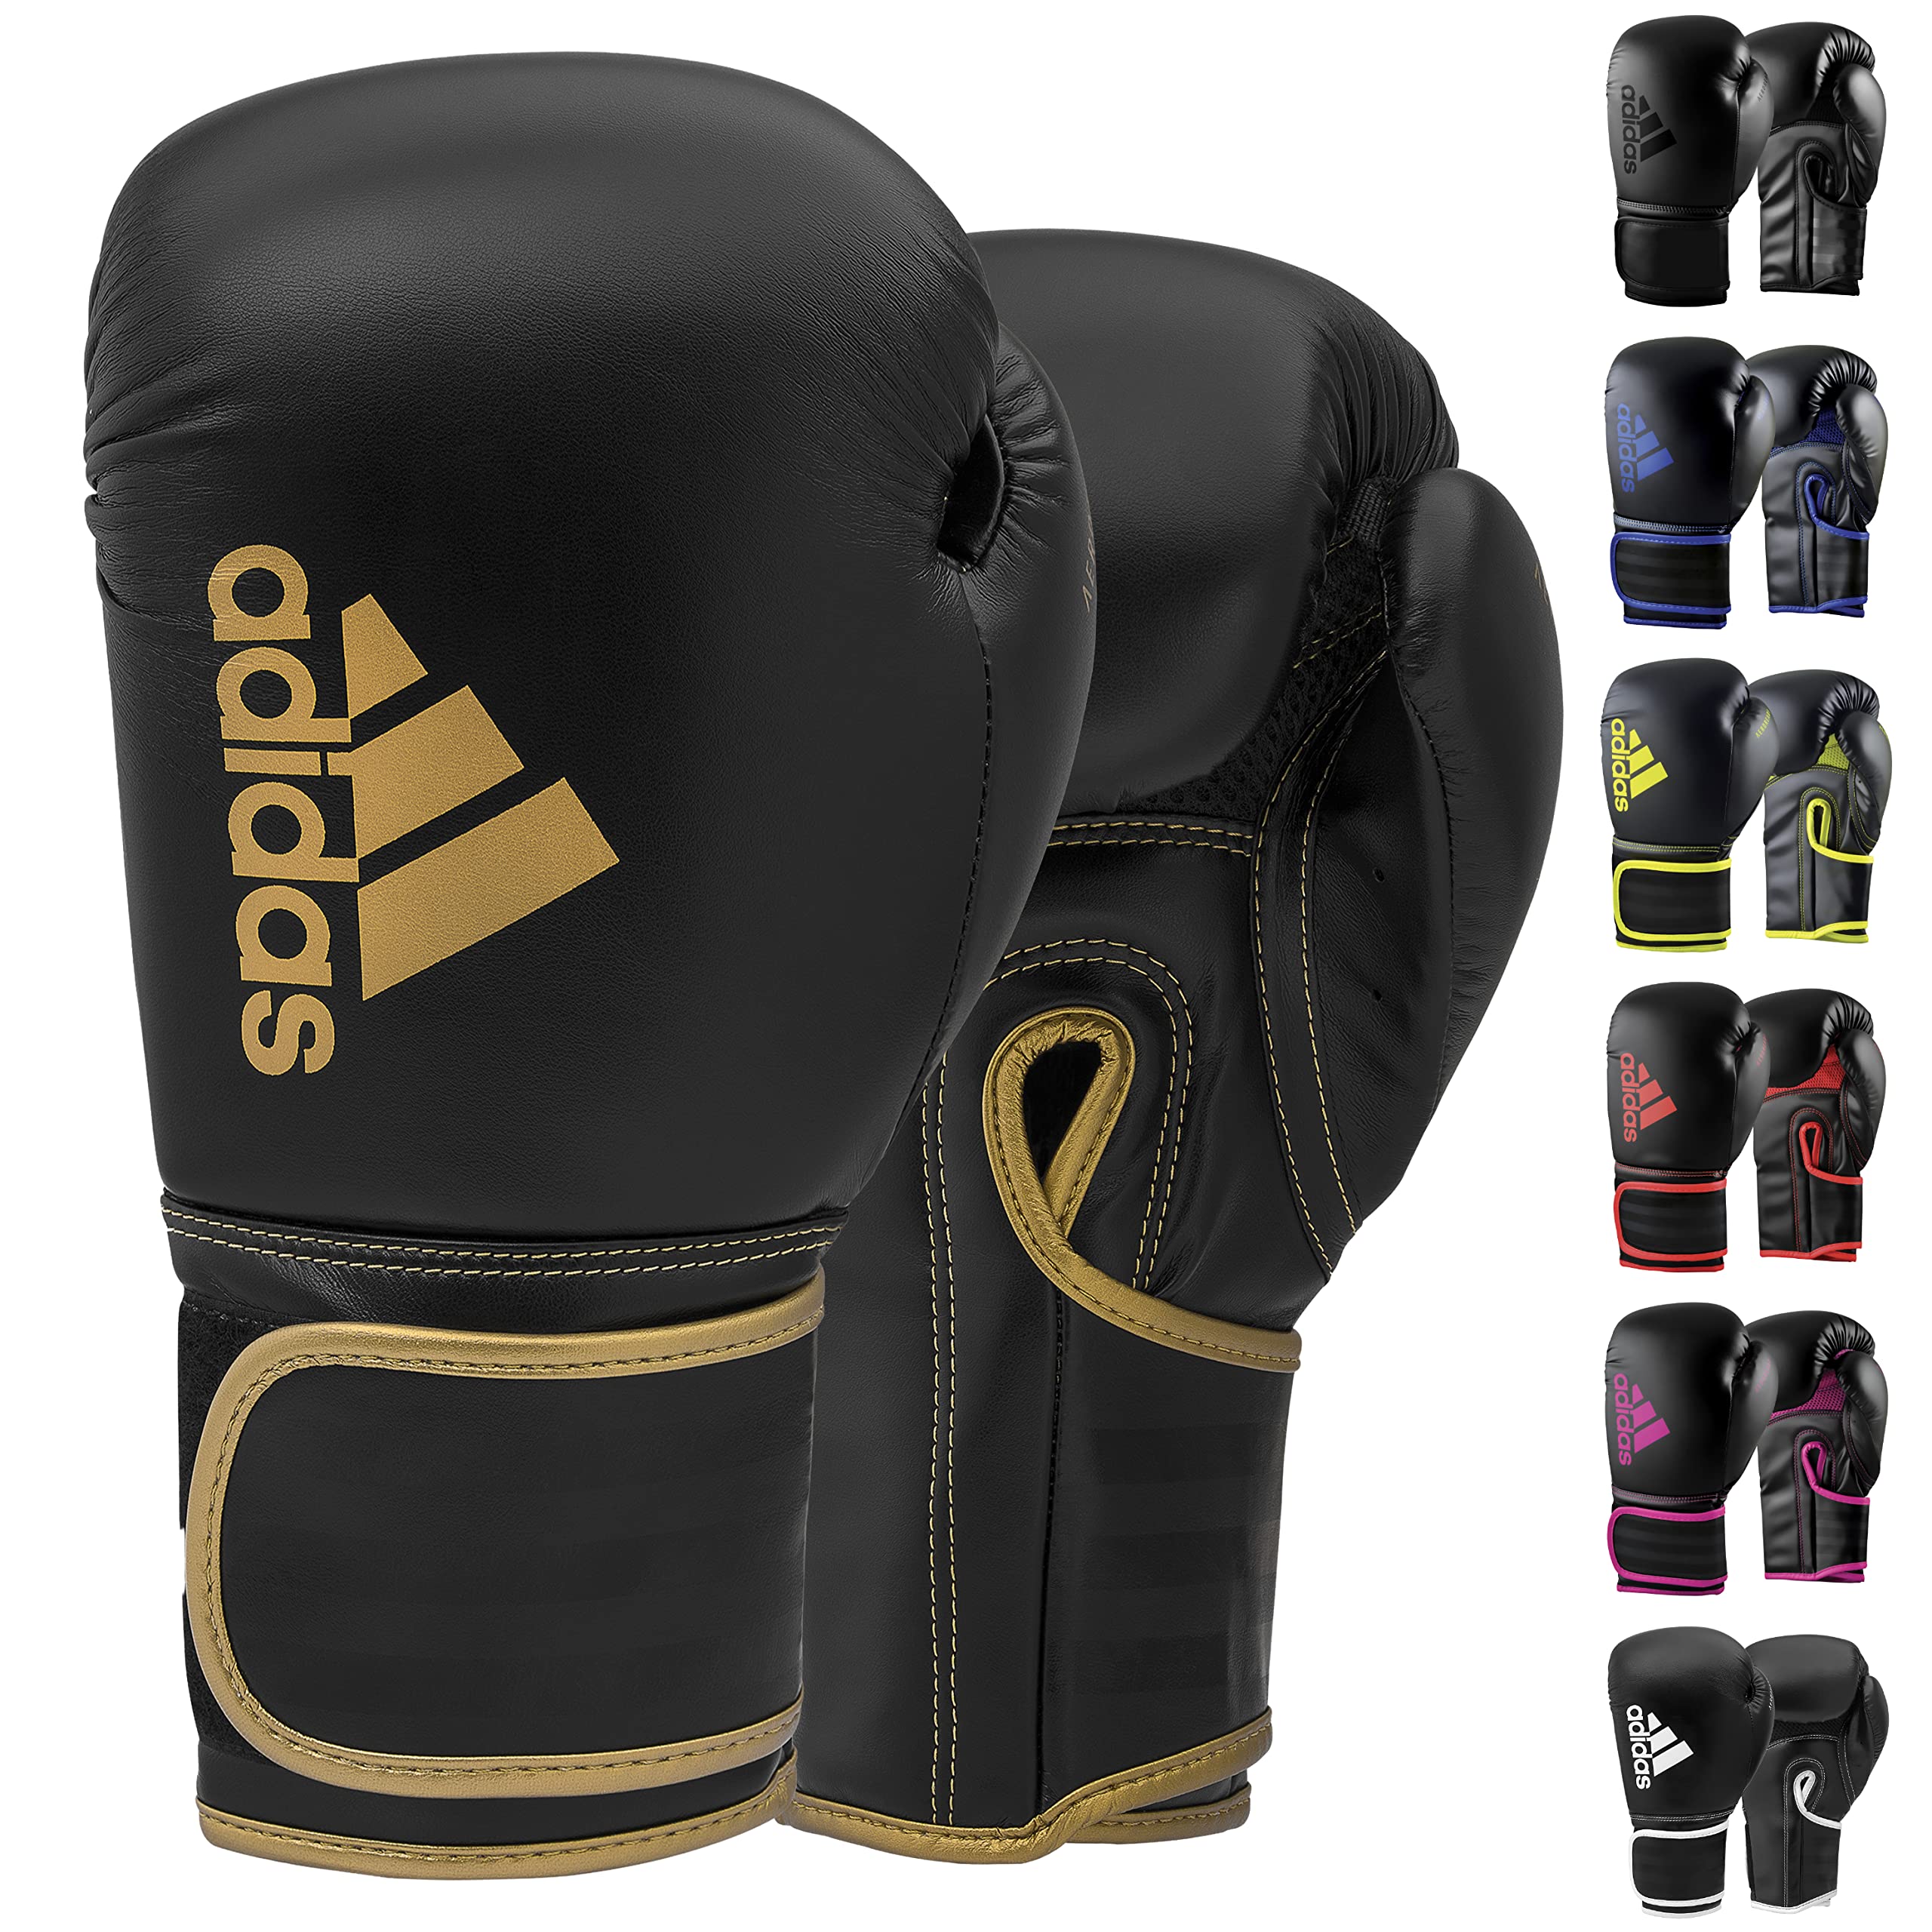 Adidas Boxing Gloves & Training & - Men, Fitness Bag, Black/Gold Kids Hybrid Boxing Kickboxing, Gloves - for - Women 12oz MMA, for Boxing, 80